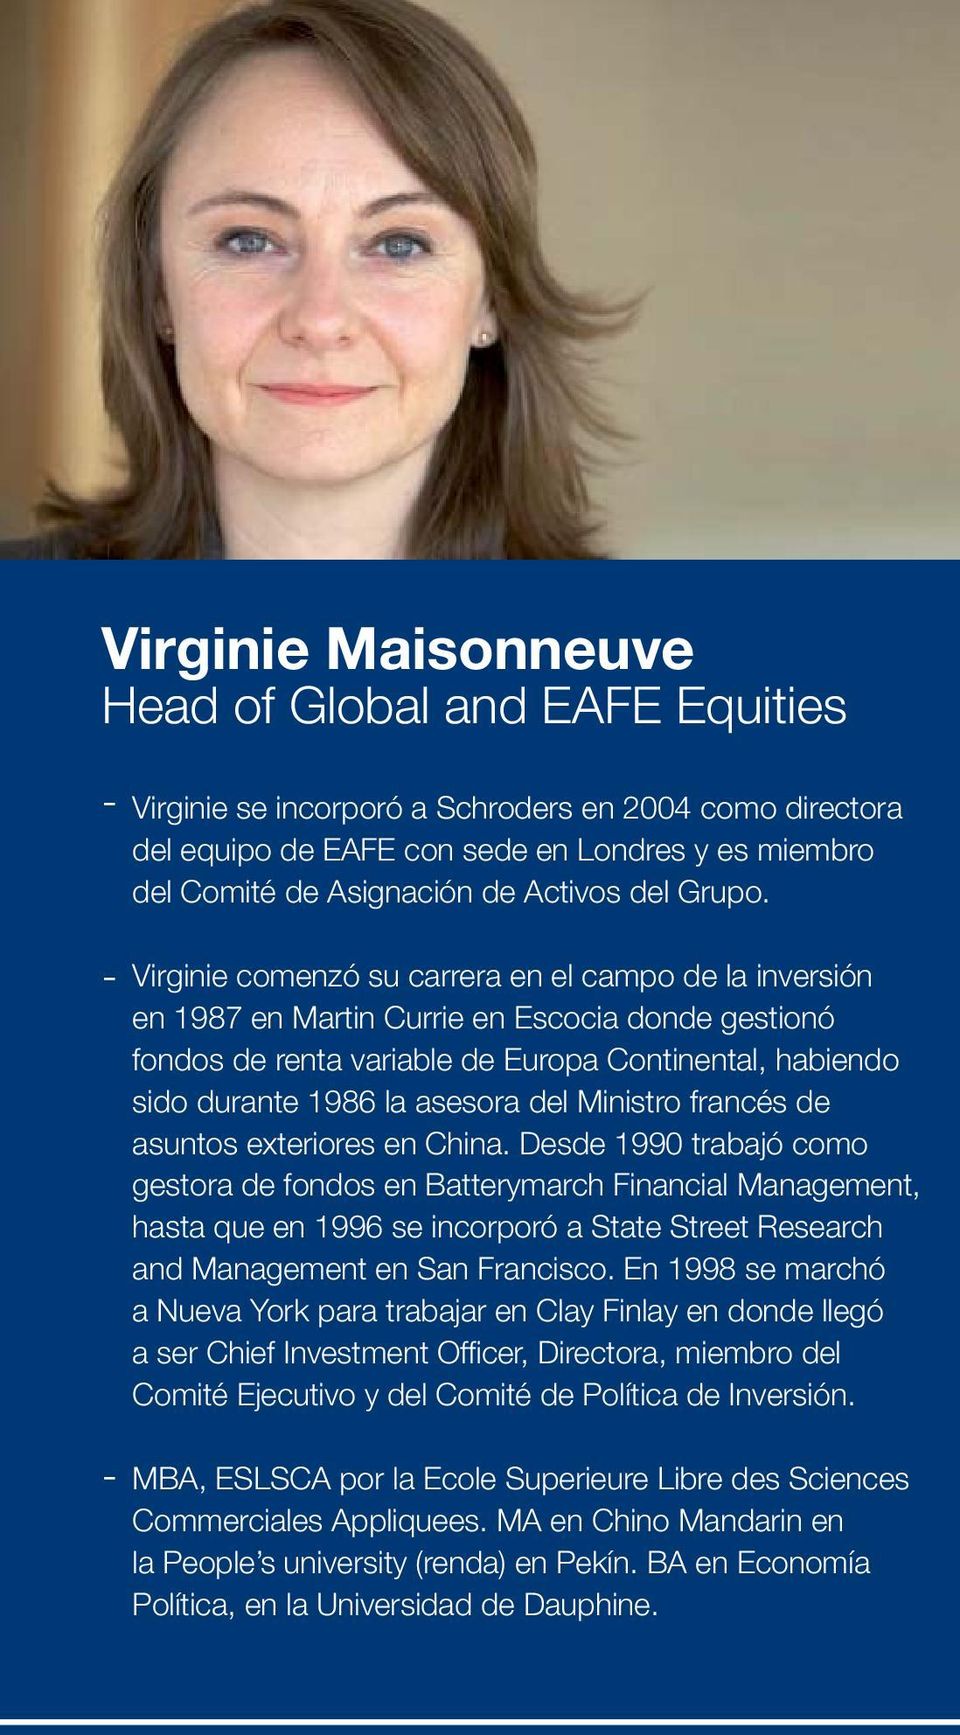 Virginie comenzó su carrera en el campo de la inversión en 1987 en Martin Currie en Escocia donde gestionó fondos de renta variable de Europa Continental, habiendo sido durante 1986 la asesora del